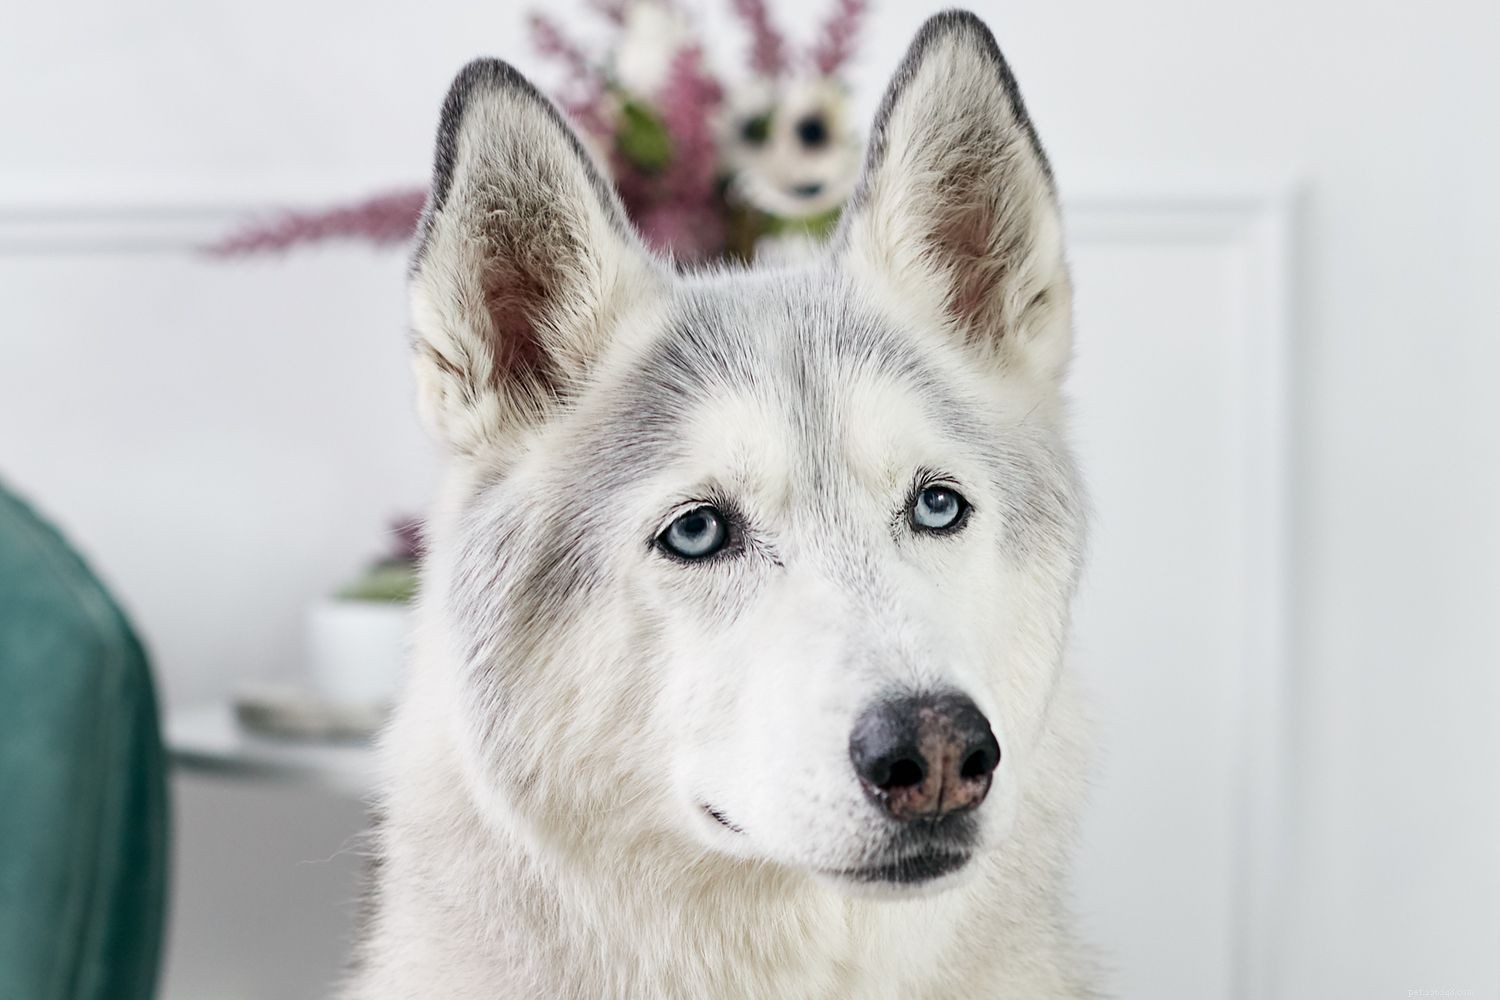 Sibiřský husky:Charakteristika a péče o plemeno psa